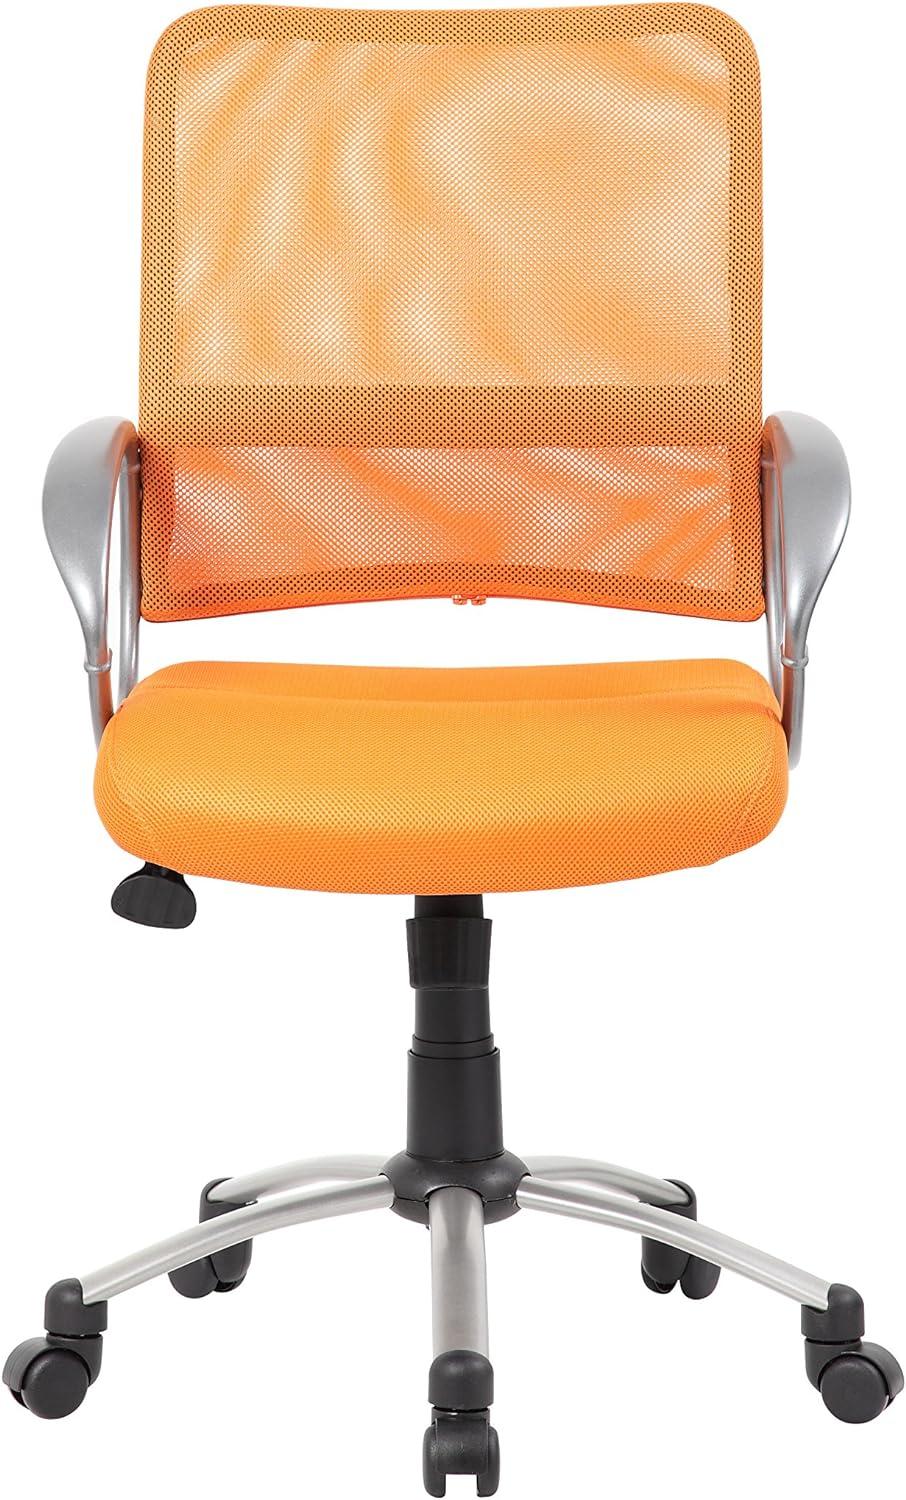 Ergonomic Orange Mesh Task Chair with Pewter Metal Base